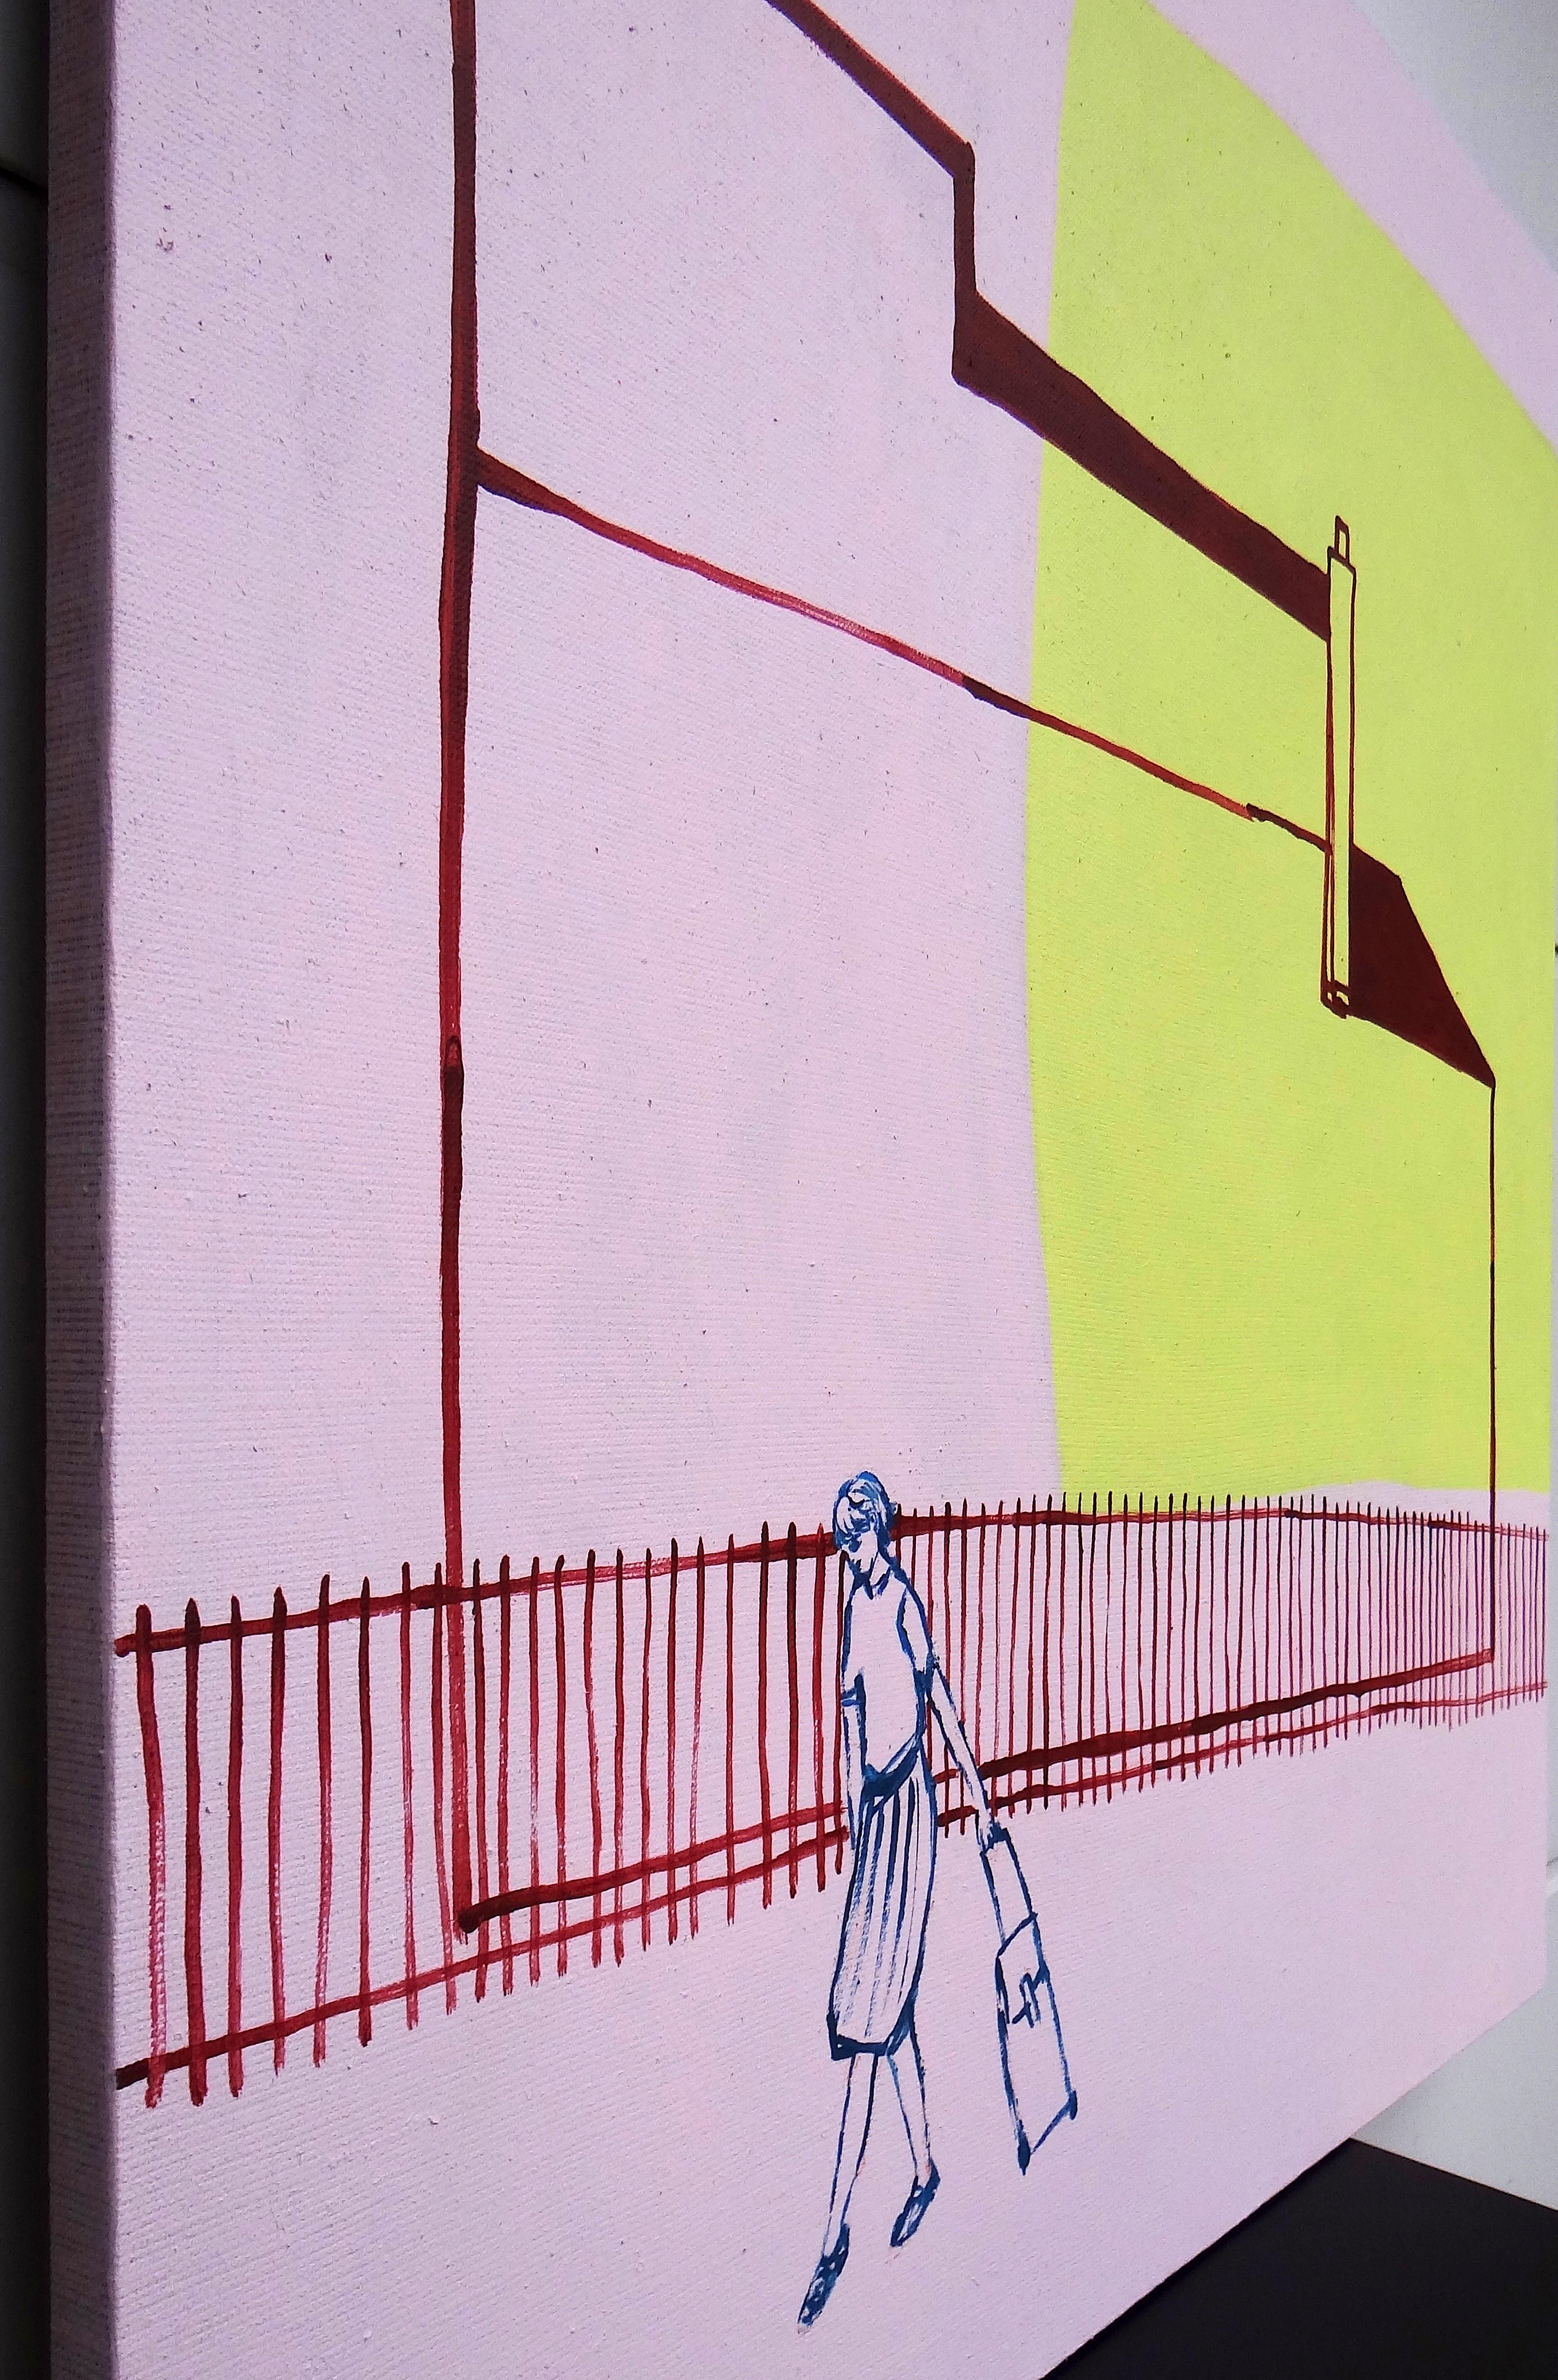 Carte postale de Zacisze - Peinture contemporaine expressive et minimaliste - Contemporain Painting par Joanna Mrozowska